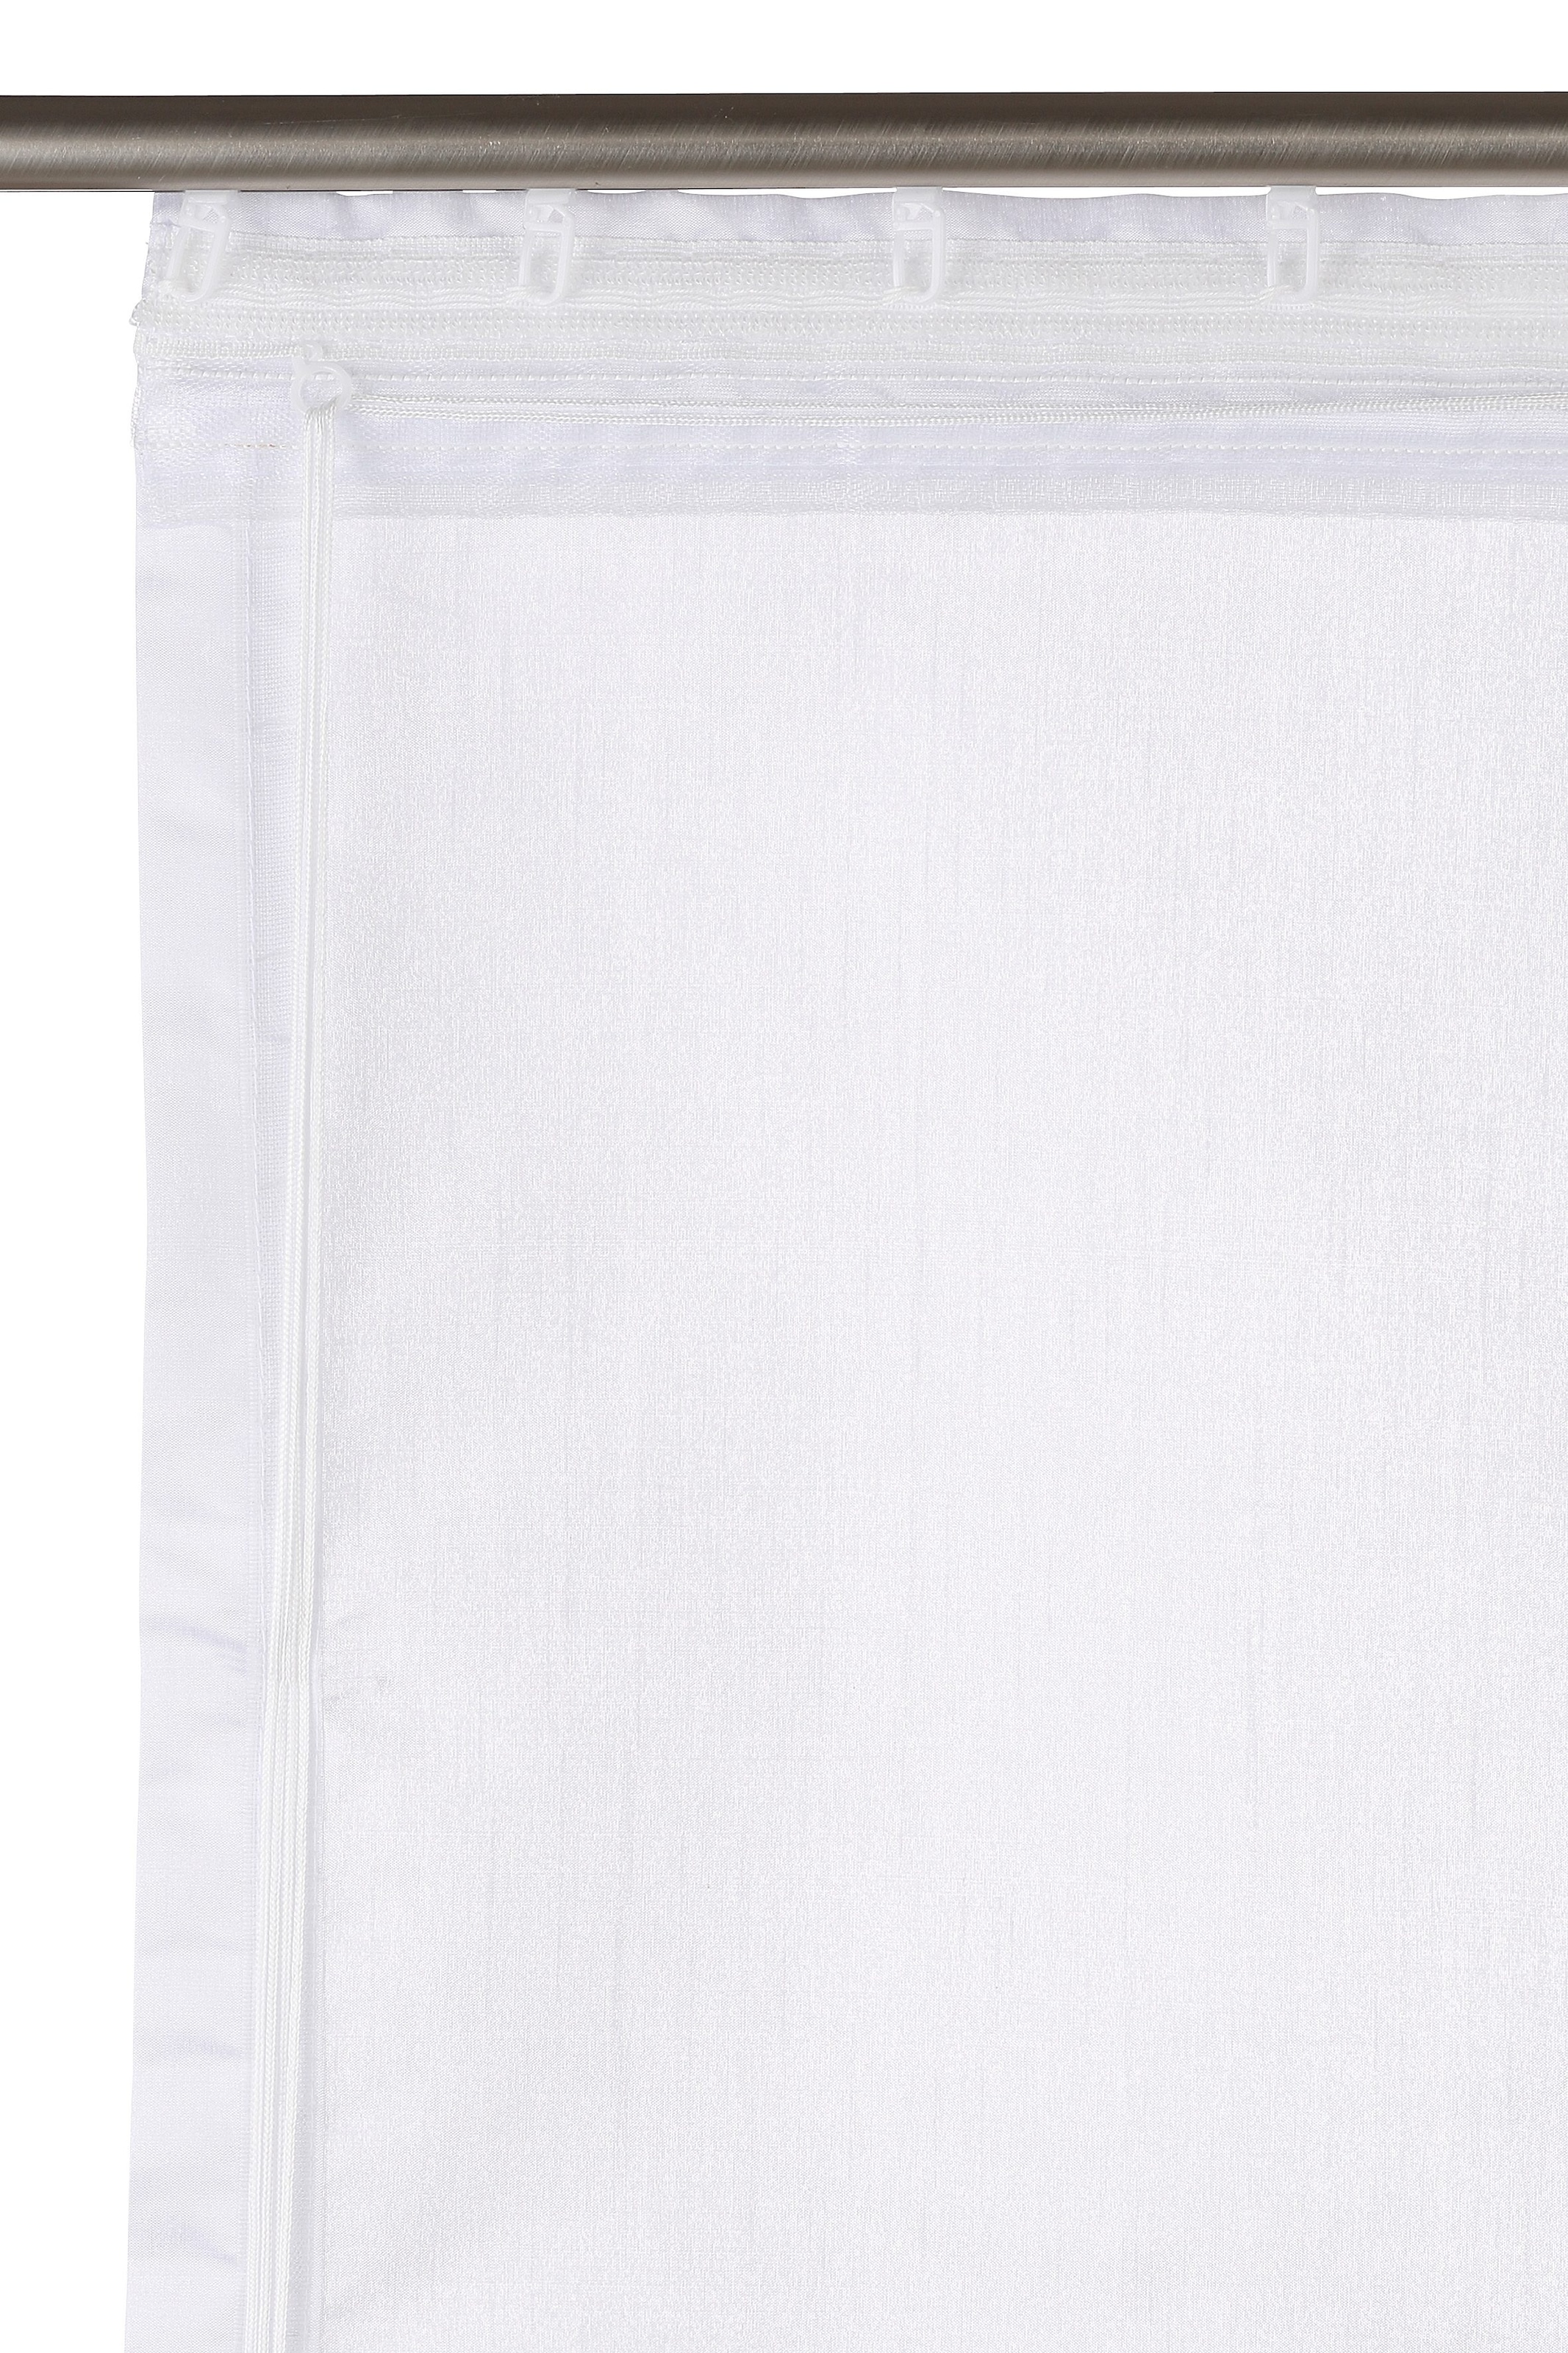 my home Raffrollo günstig Polyester kaufen Halbtransparent, mit Klettband, »VENEDIG«